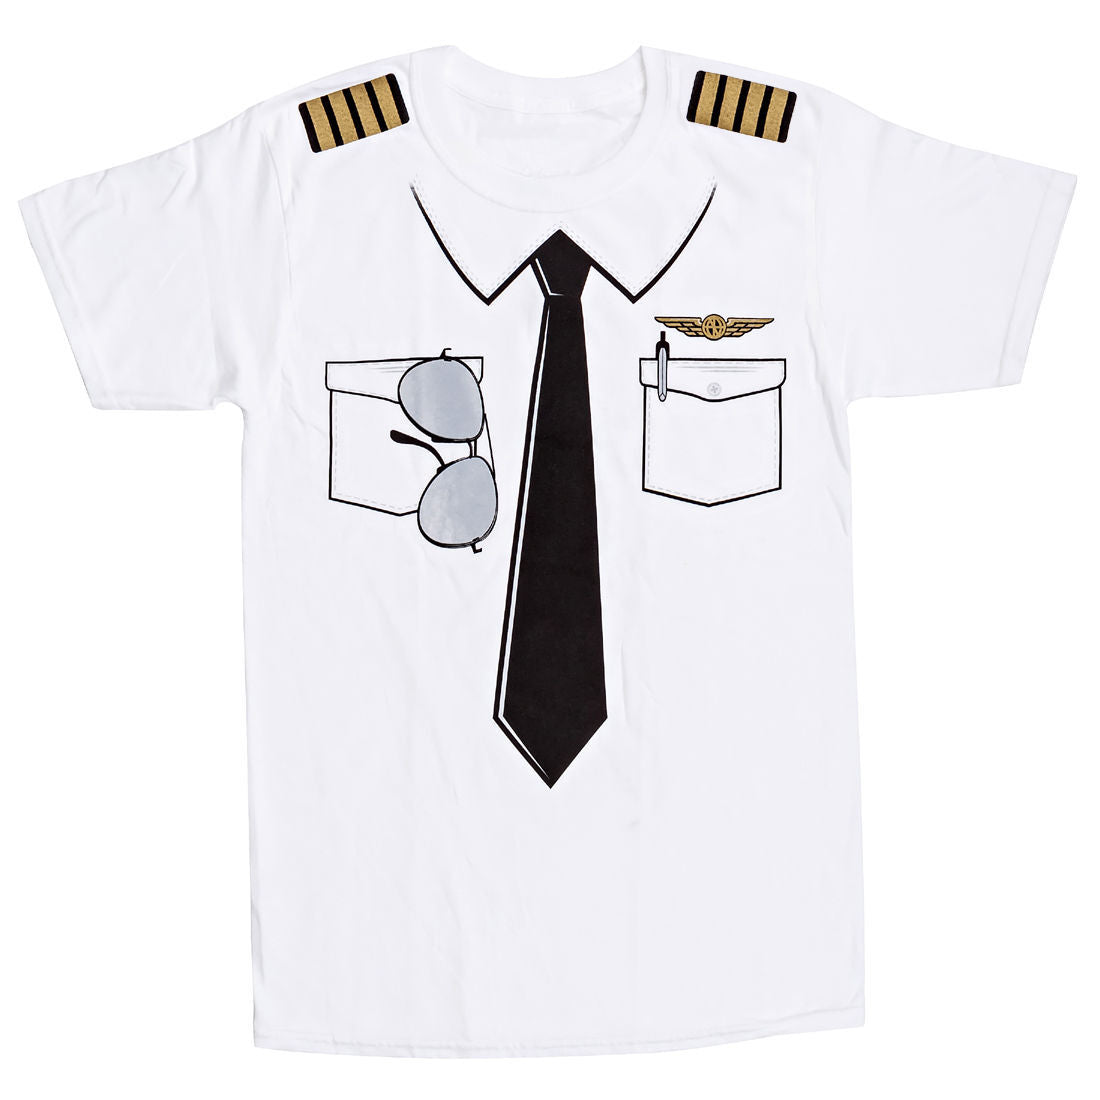 The Pilot Uniform T-Shirt-Luso Aviation-Downunder Pilot Shop Australia